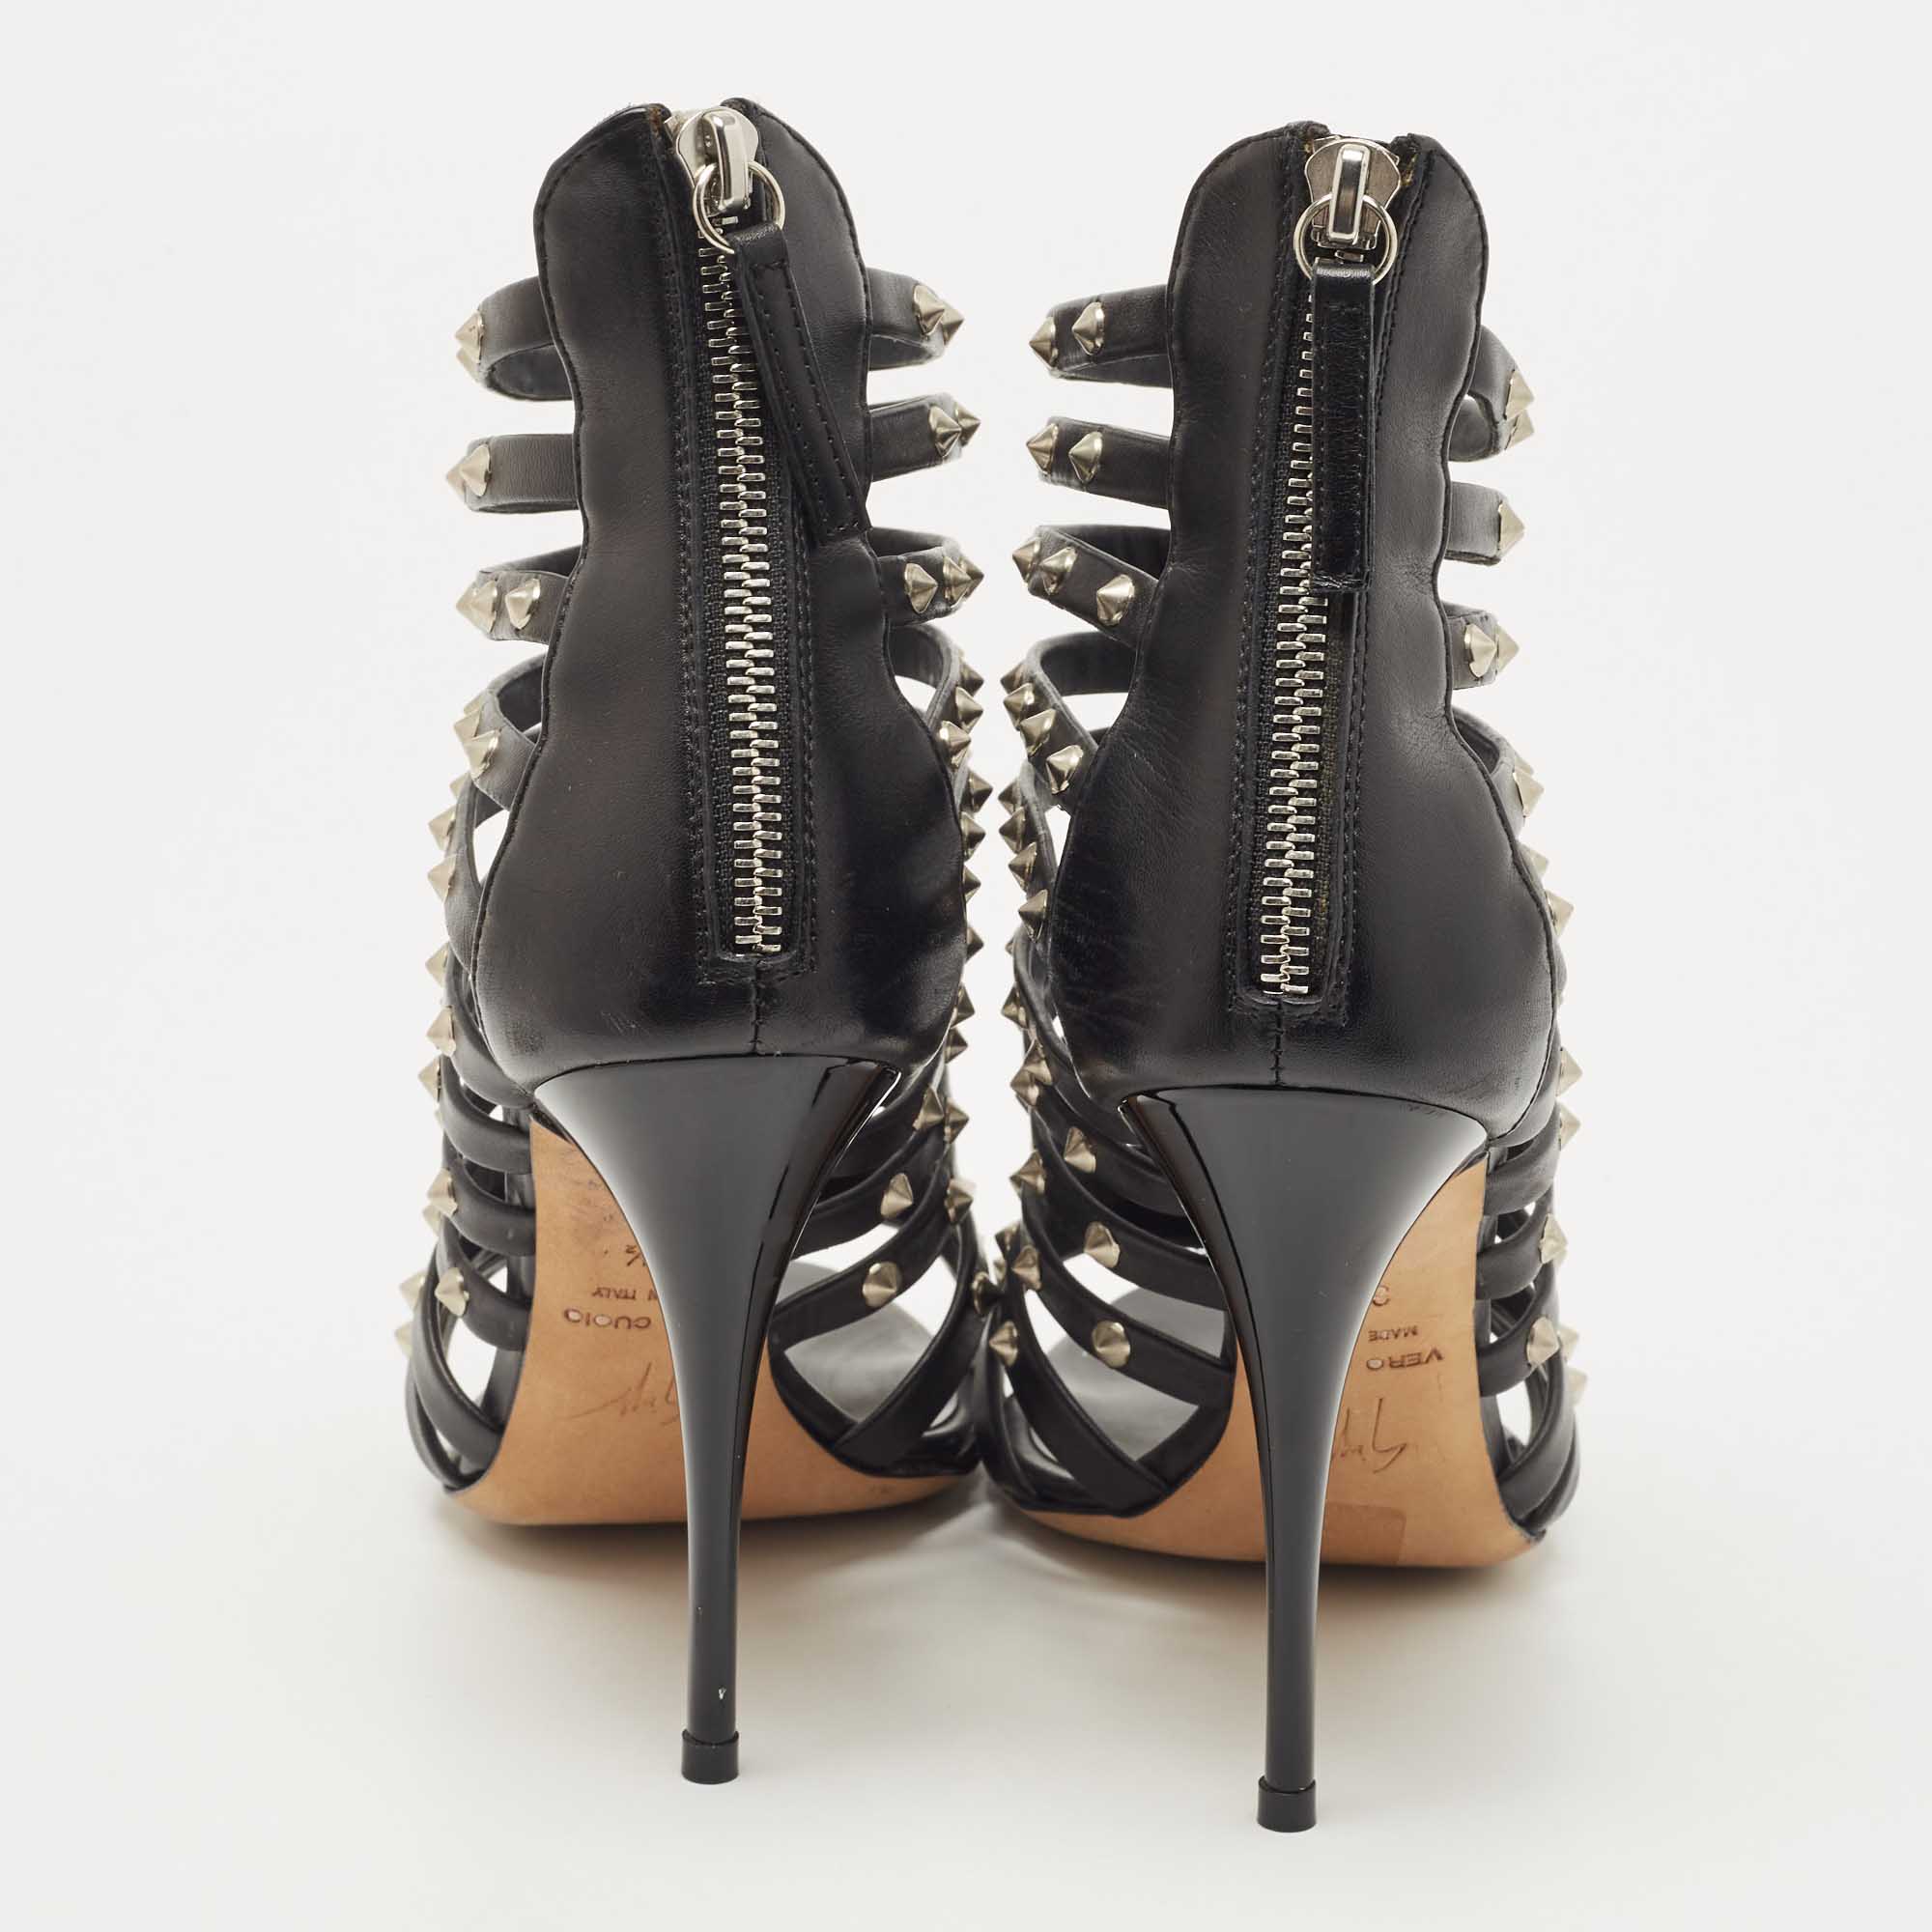 Giuseppe Zanotti Black Leather Studded Strappy Sandals Size 36.5